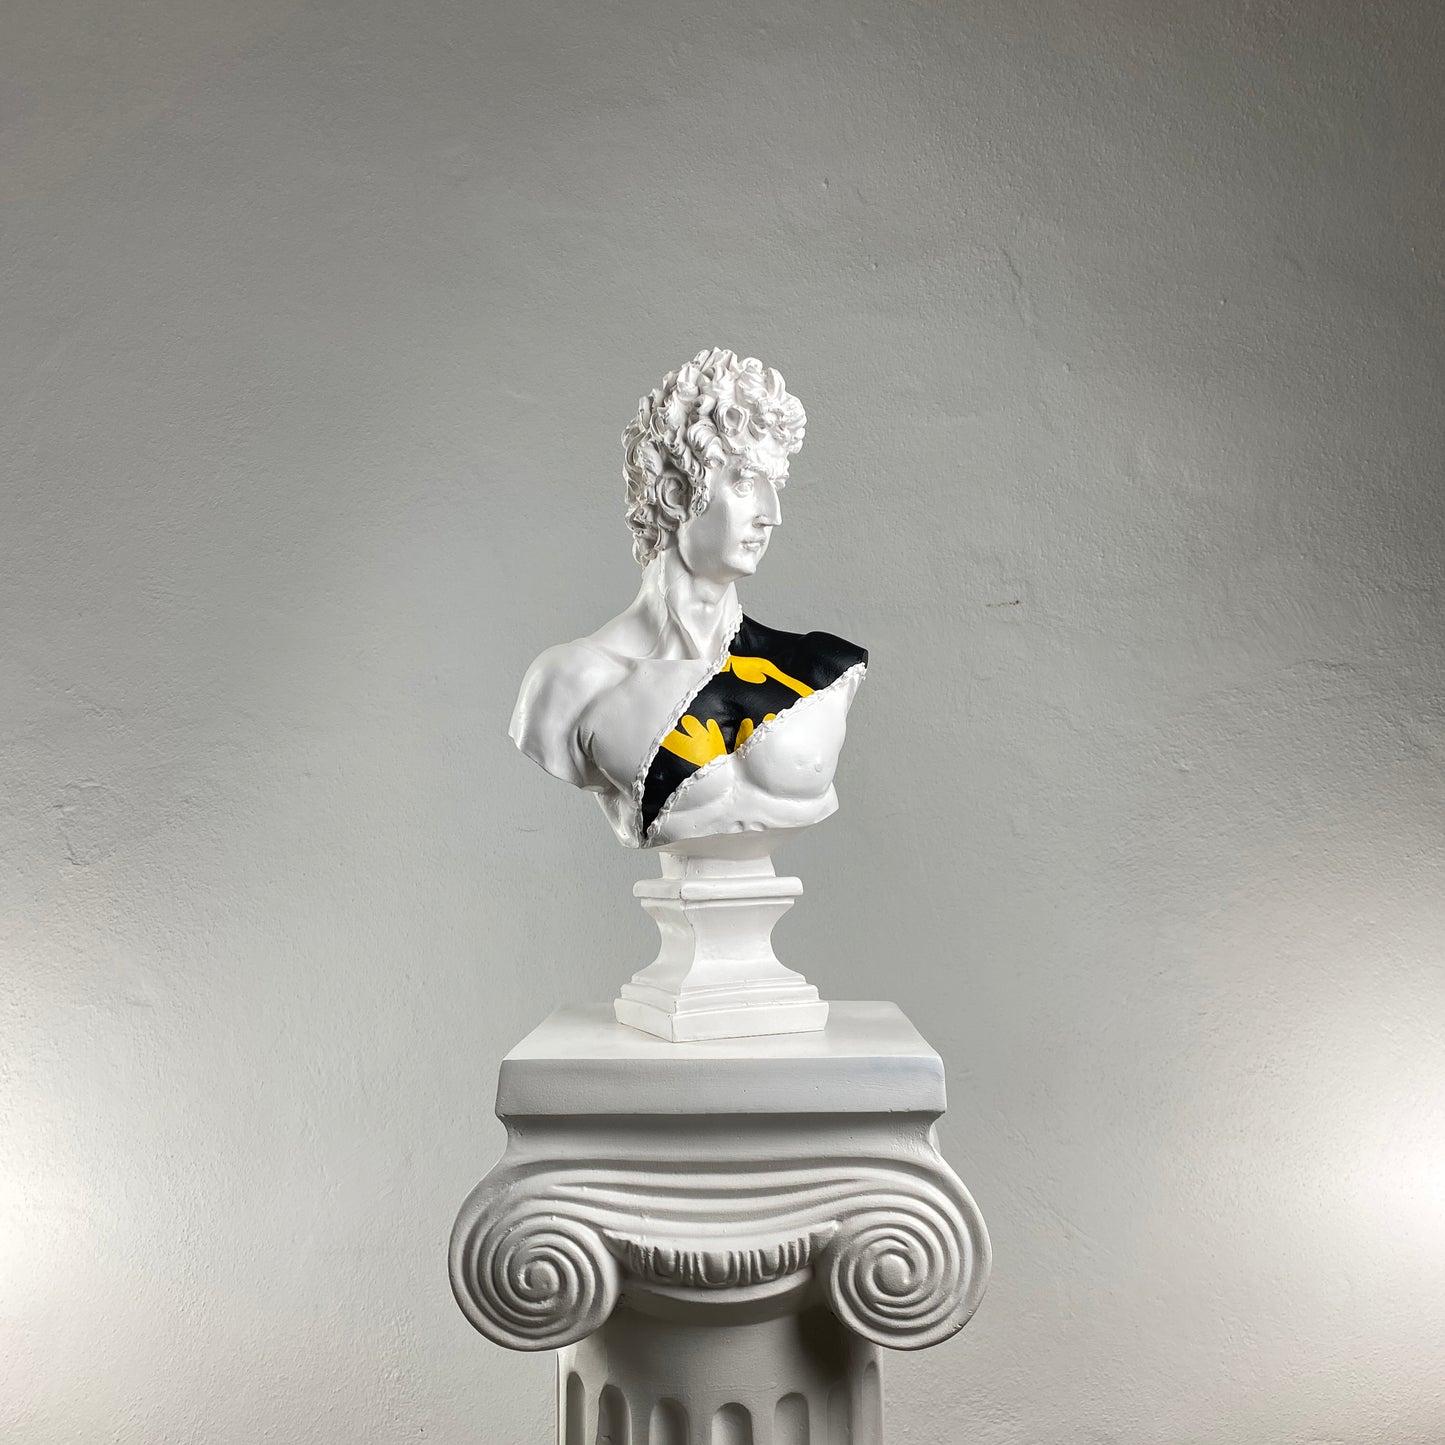 David 'Batman' Pop Art Sculpture, Modern Home Decor, Large Sculpture